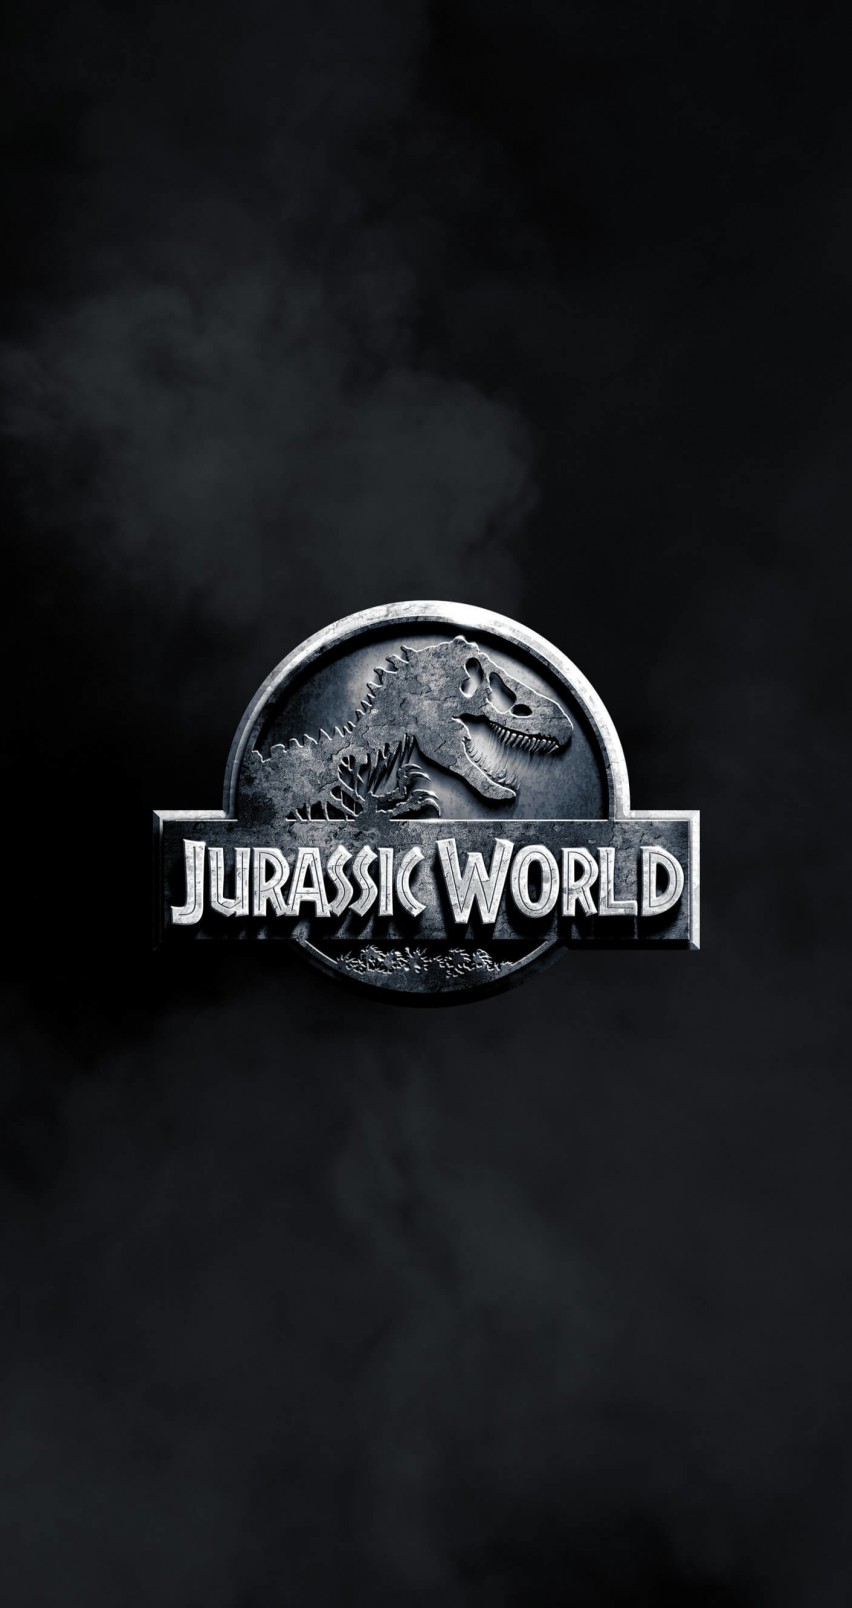 Jurassic World Wallpaper for Apple iPhone 6 / 6s